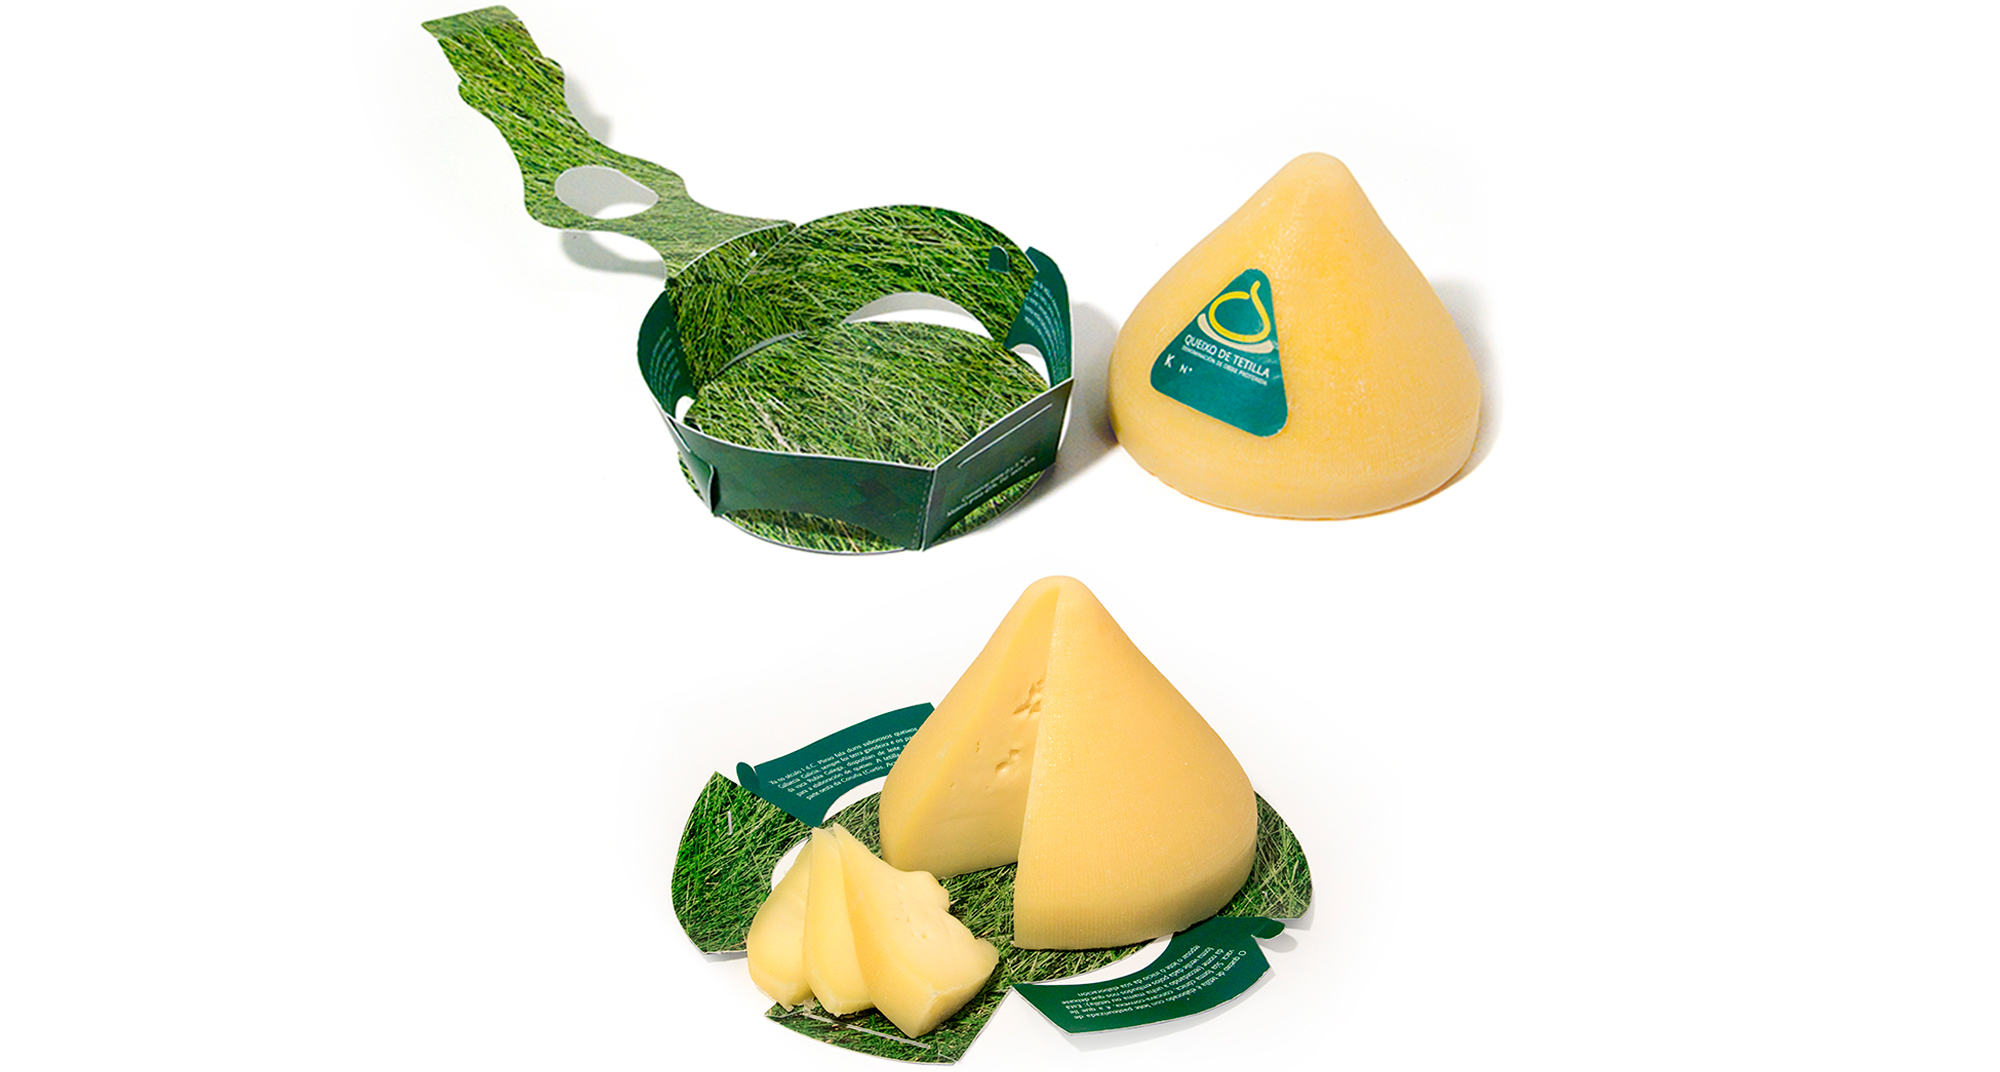 Diseño interior y desarrollo del envase para el queso de Tetilla